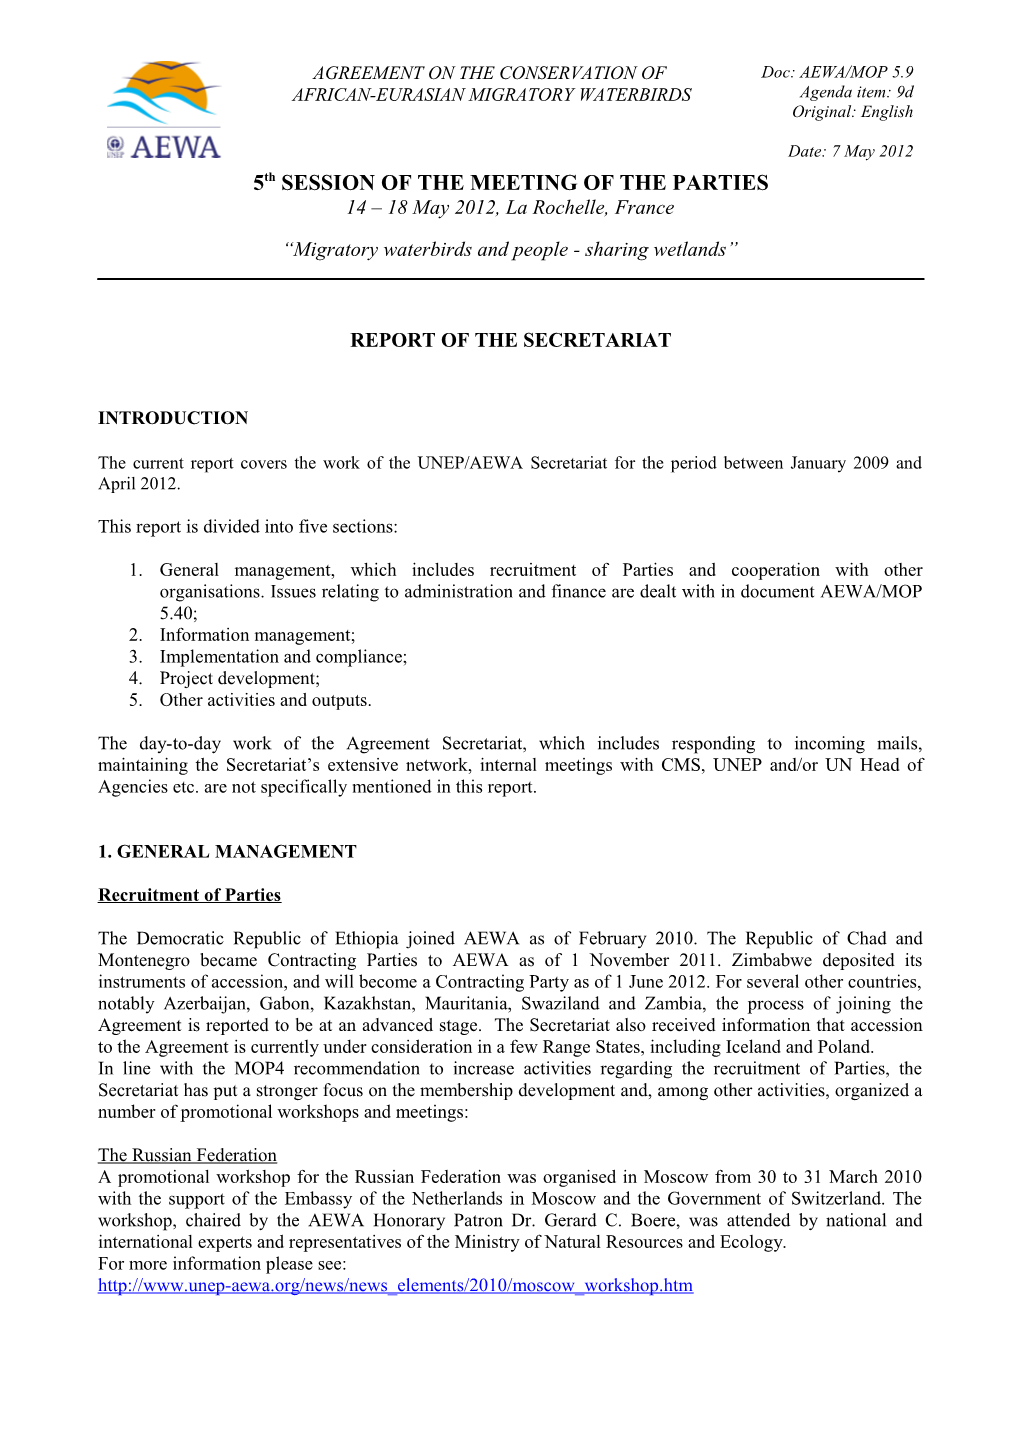 Report of the Secretariat